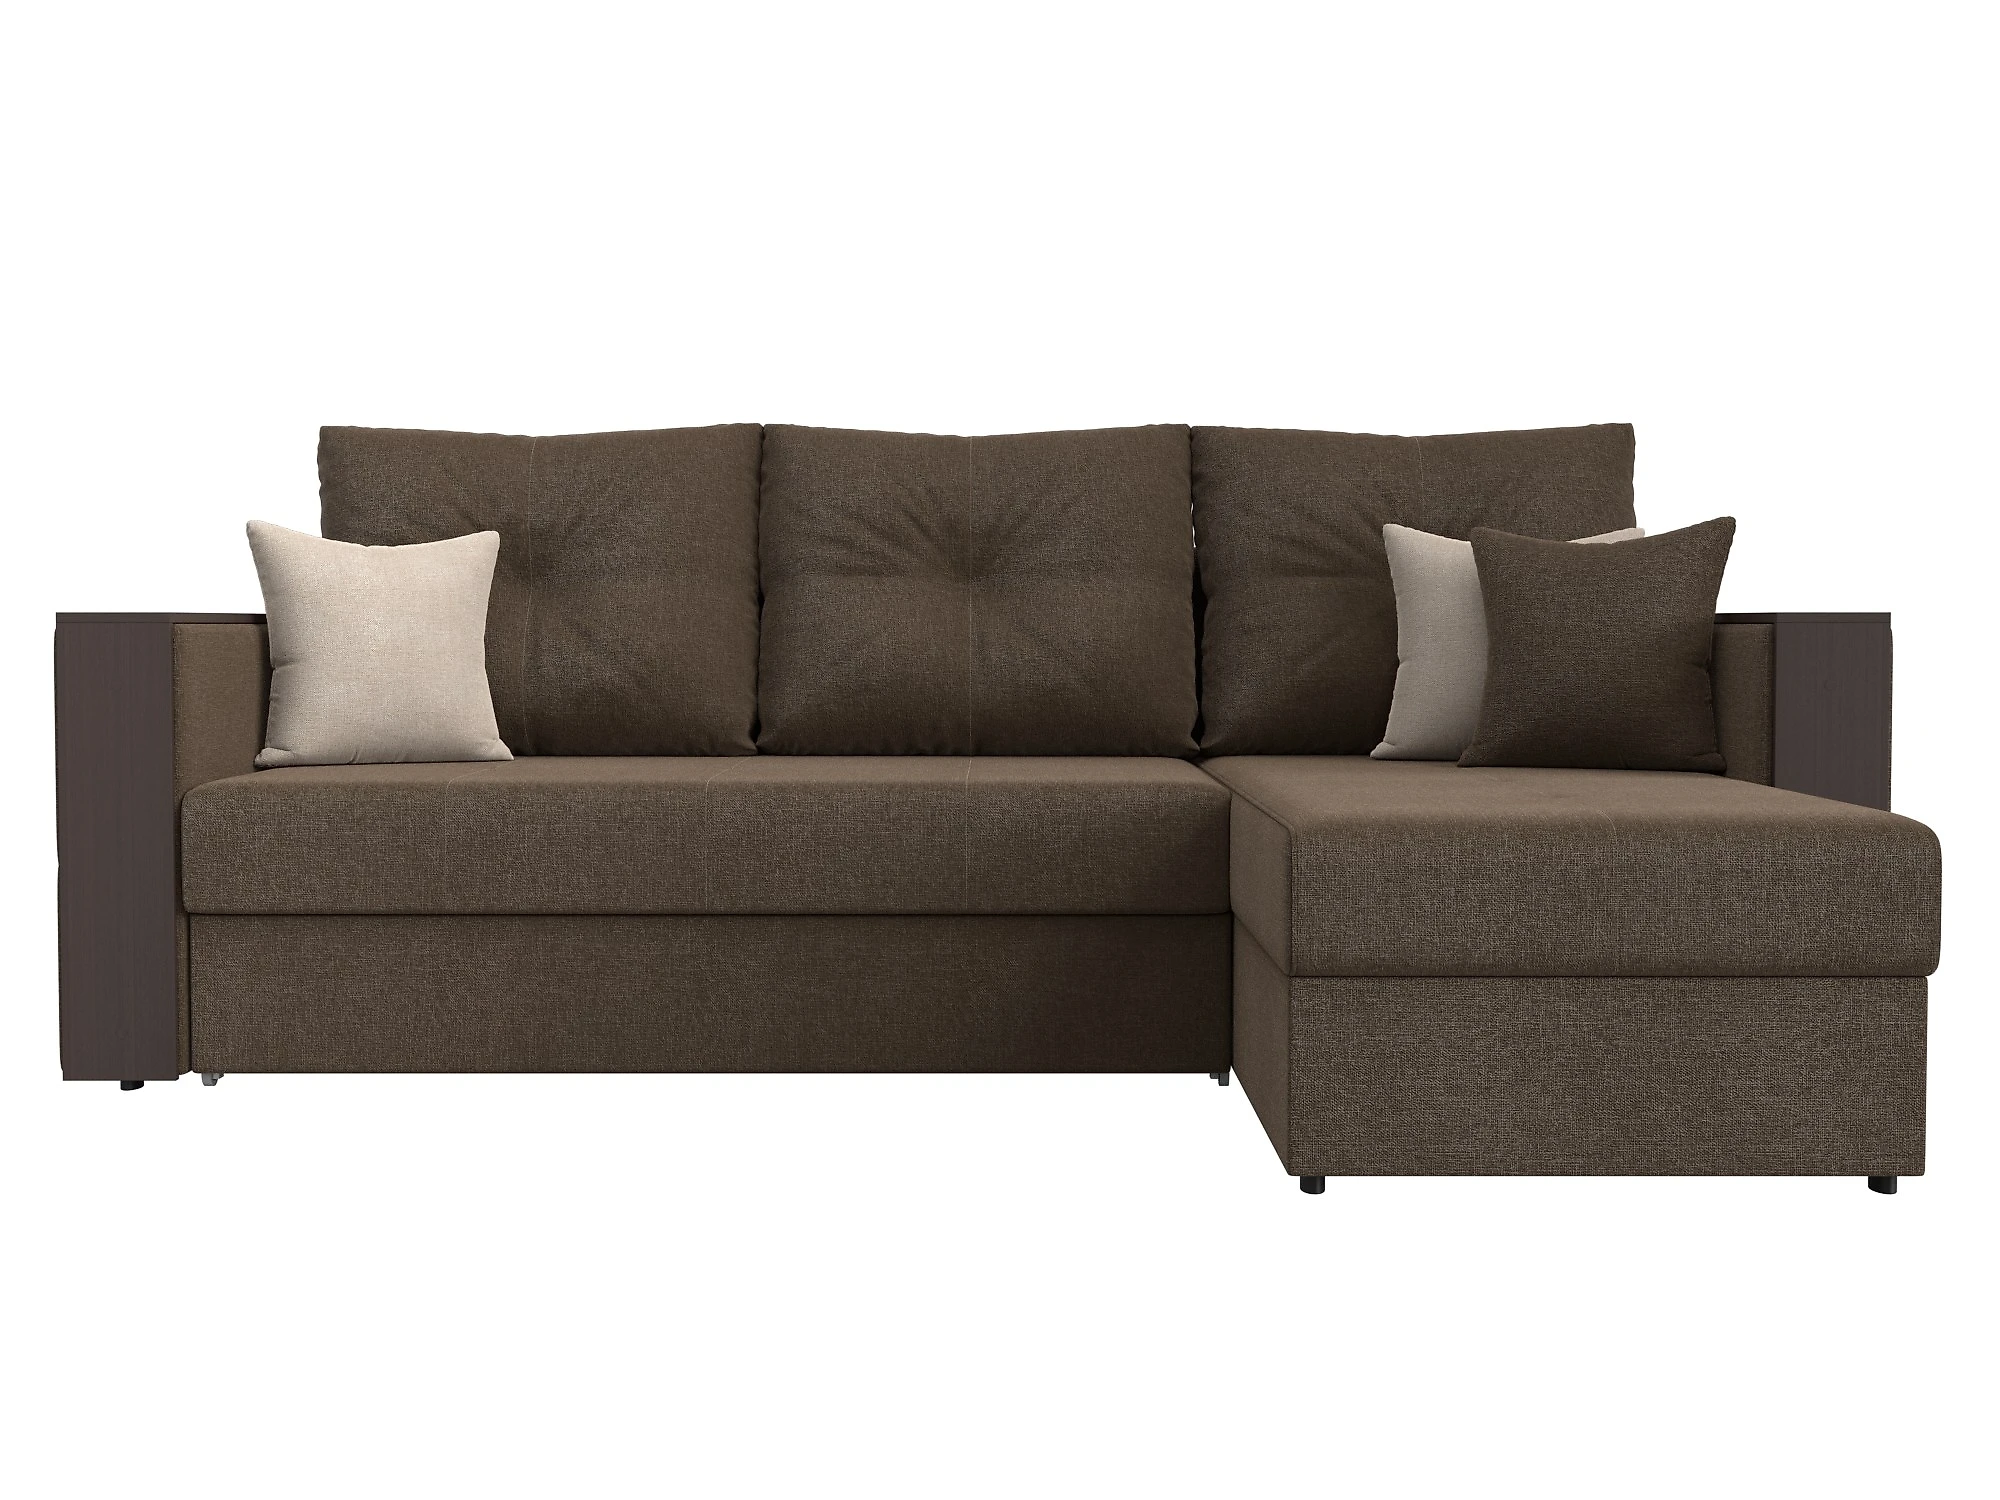  угловой диван из рогожки Валенсия Кантри Дизайн 2